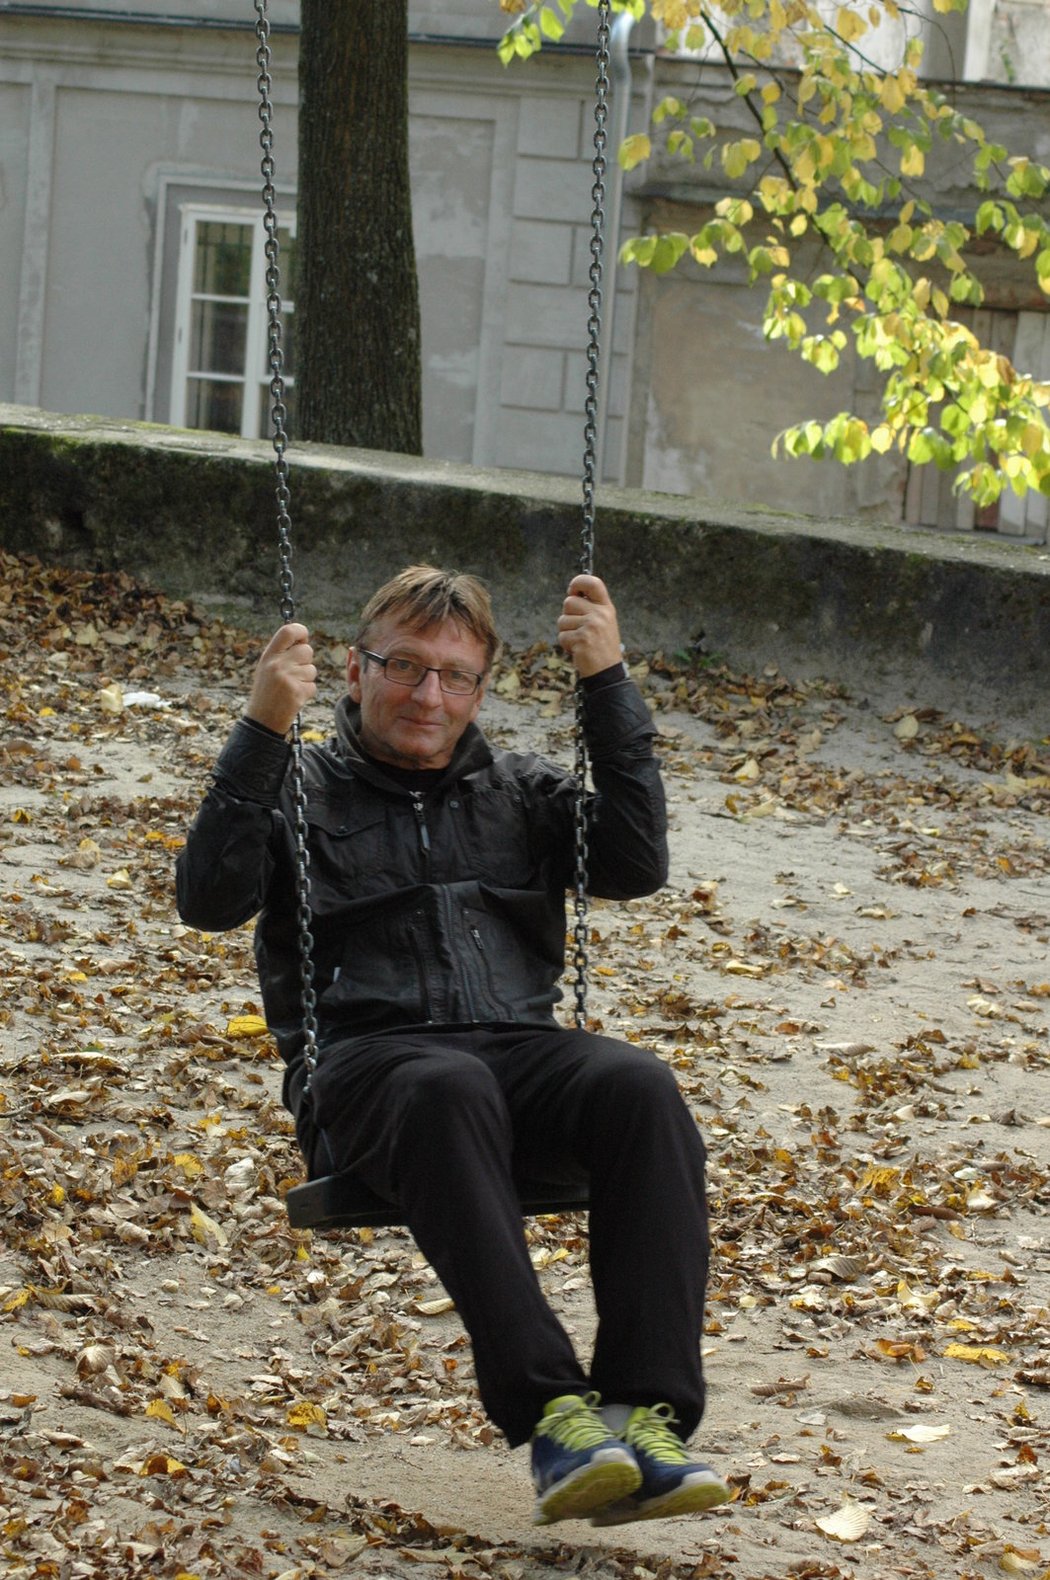 Trenér Josef Petřík přiznává, že žije život jako na houpačce. V době působení ve Slovanu Liberec byl na vrcholu, teď se snaží zvednout a trénuje Chrastavu v Libereckém přeboru. Věří, že se zase dostane výš.